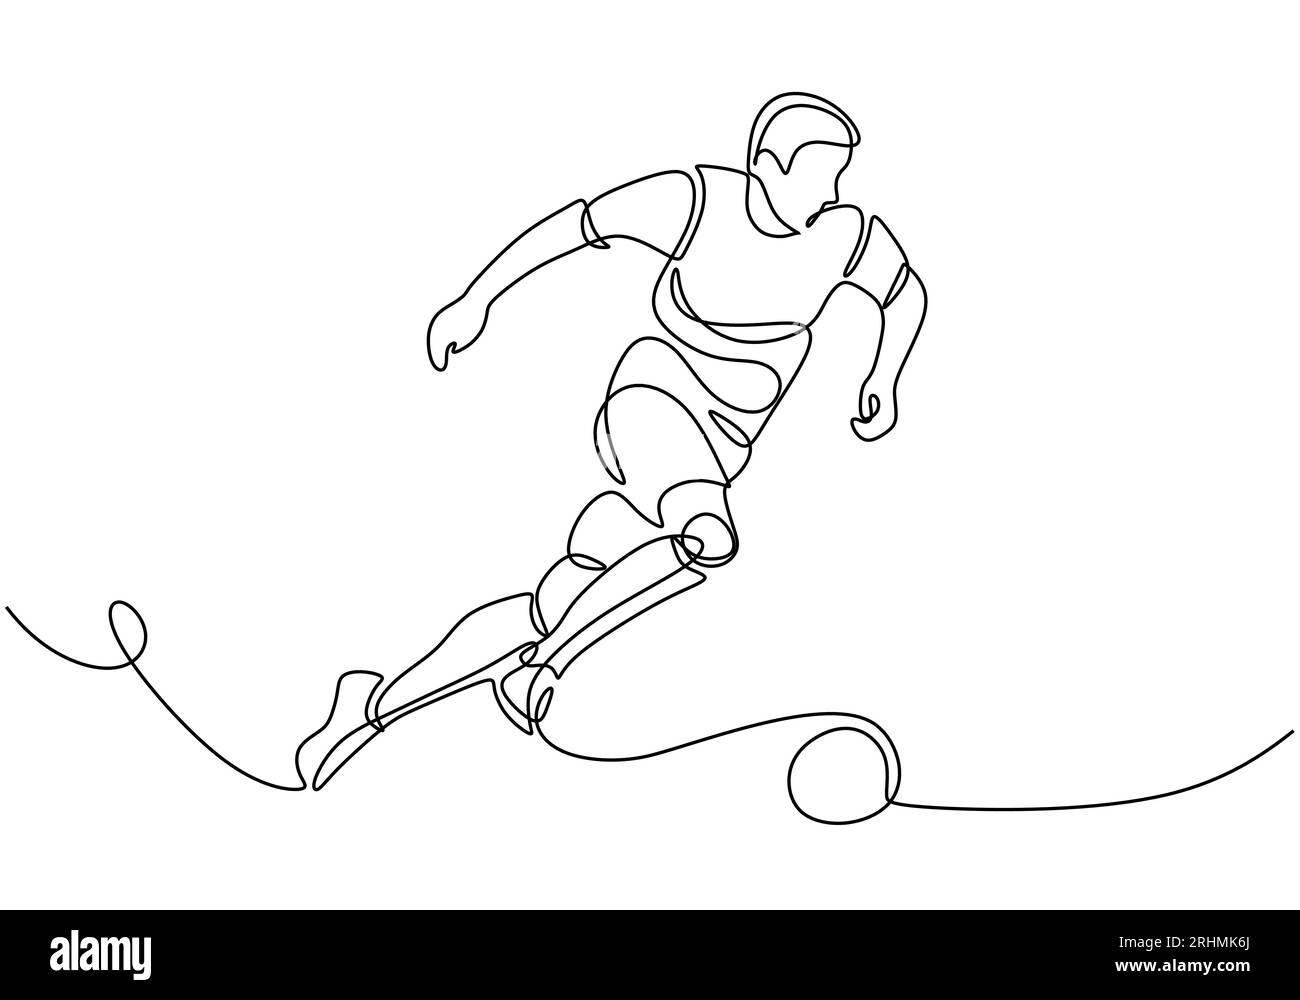 Joueur de sport de football, dessin continu d'une ligne de sportif dribble un ballon. Illustration de Vecteur